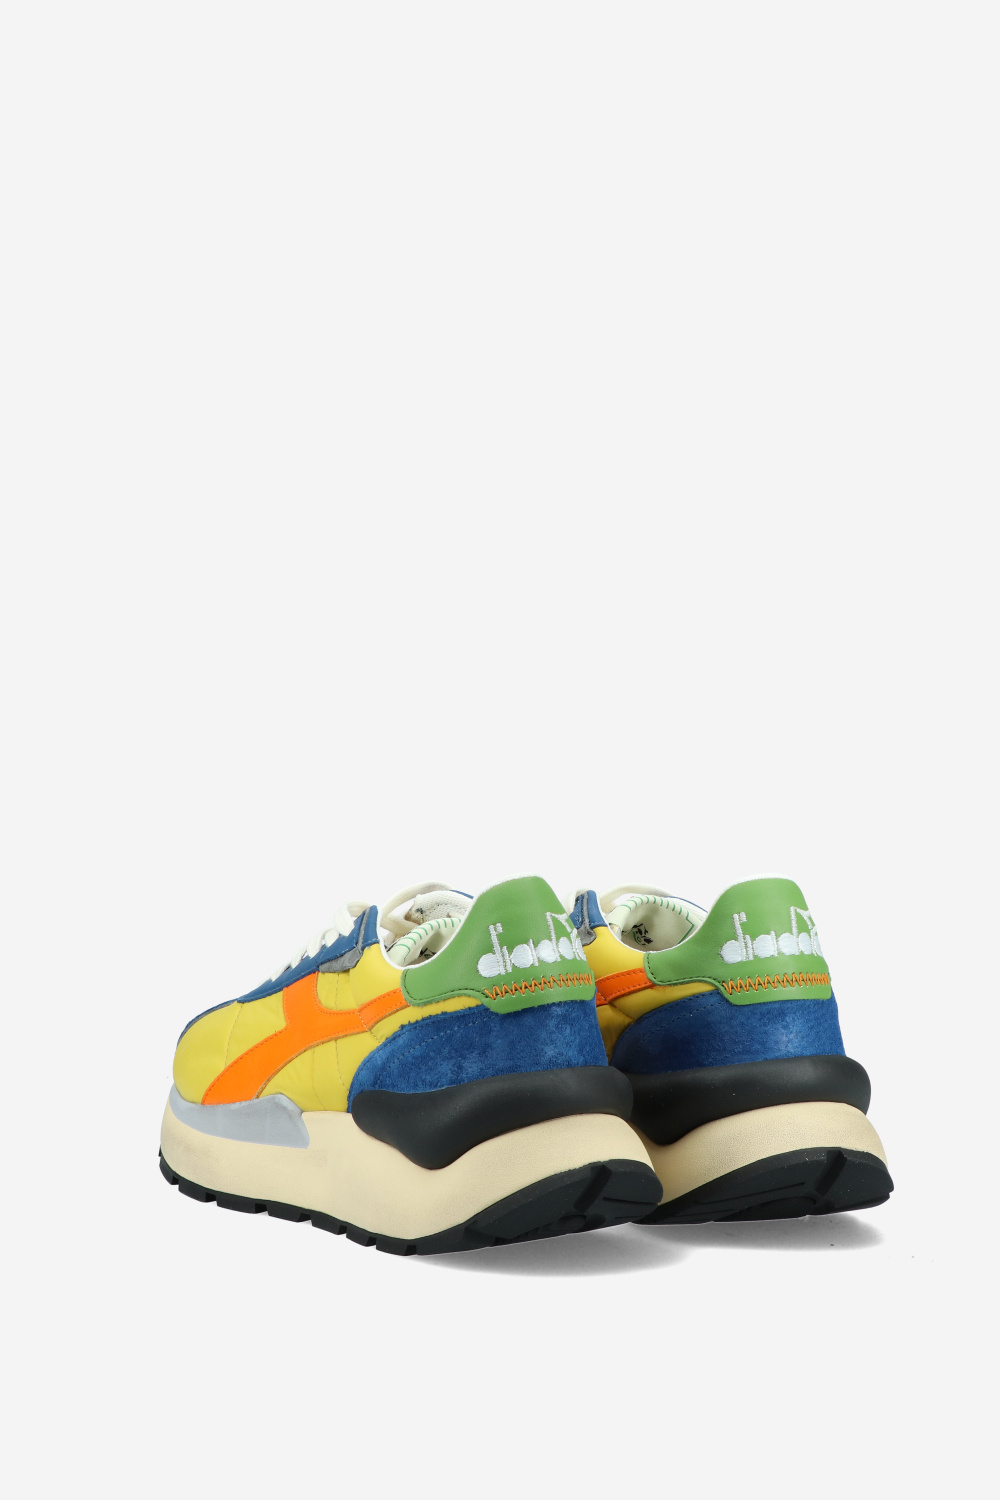 Diadora Sneakers Bright colors